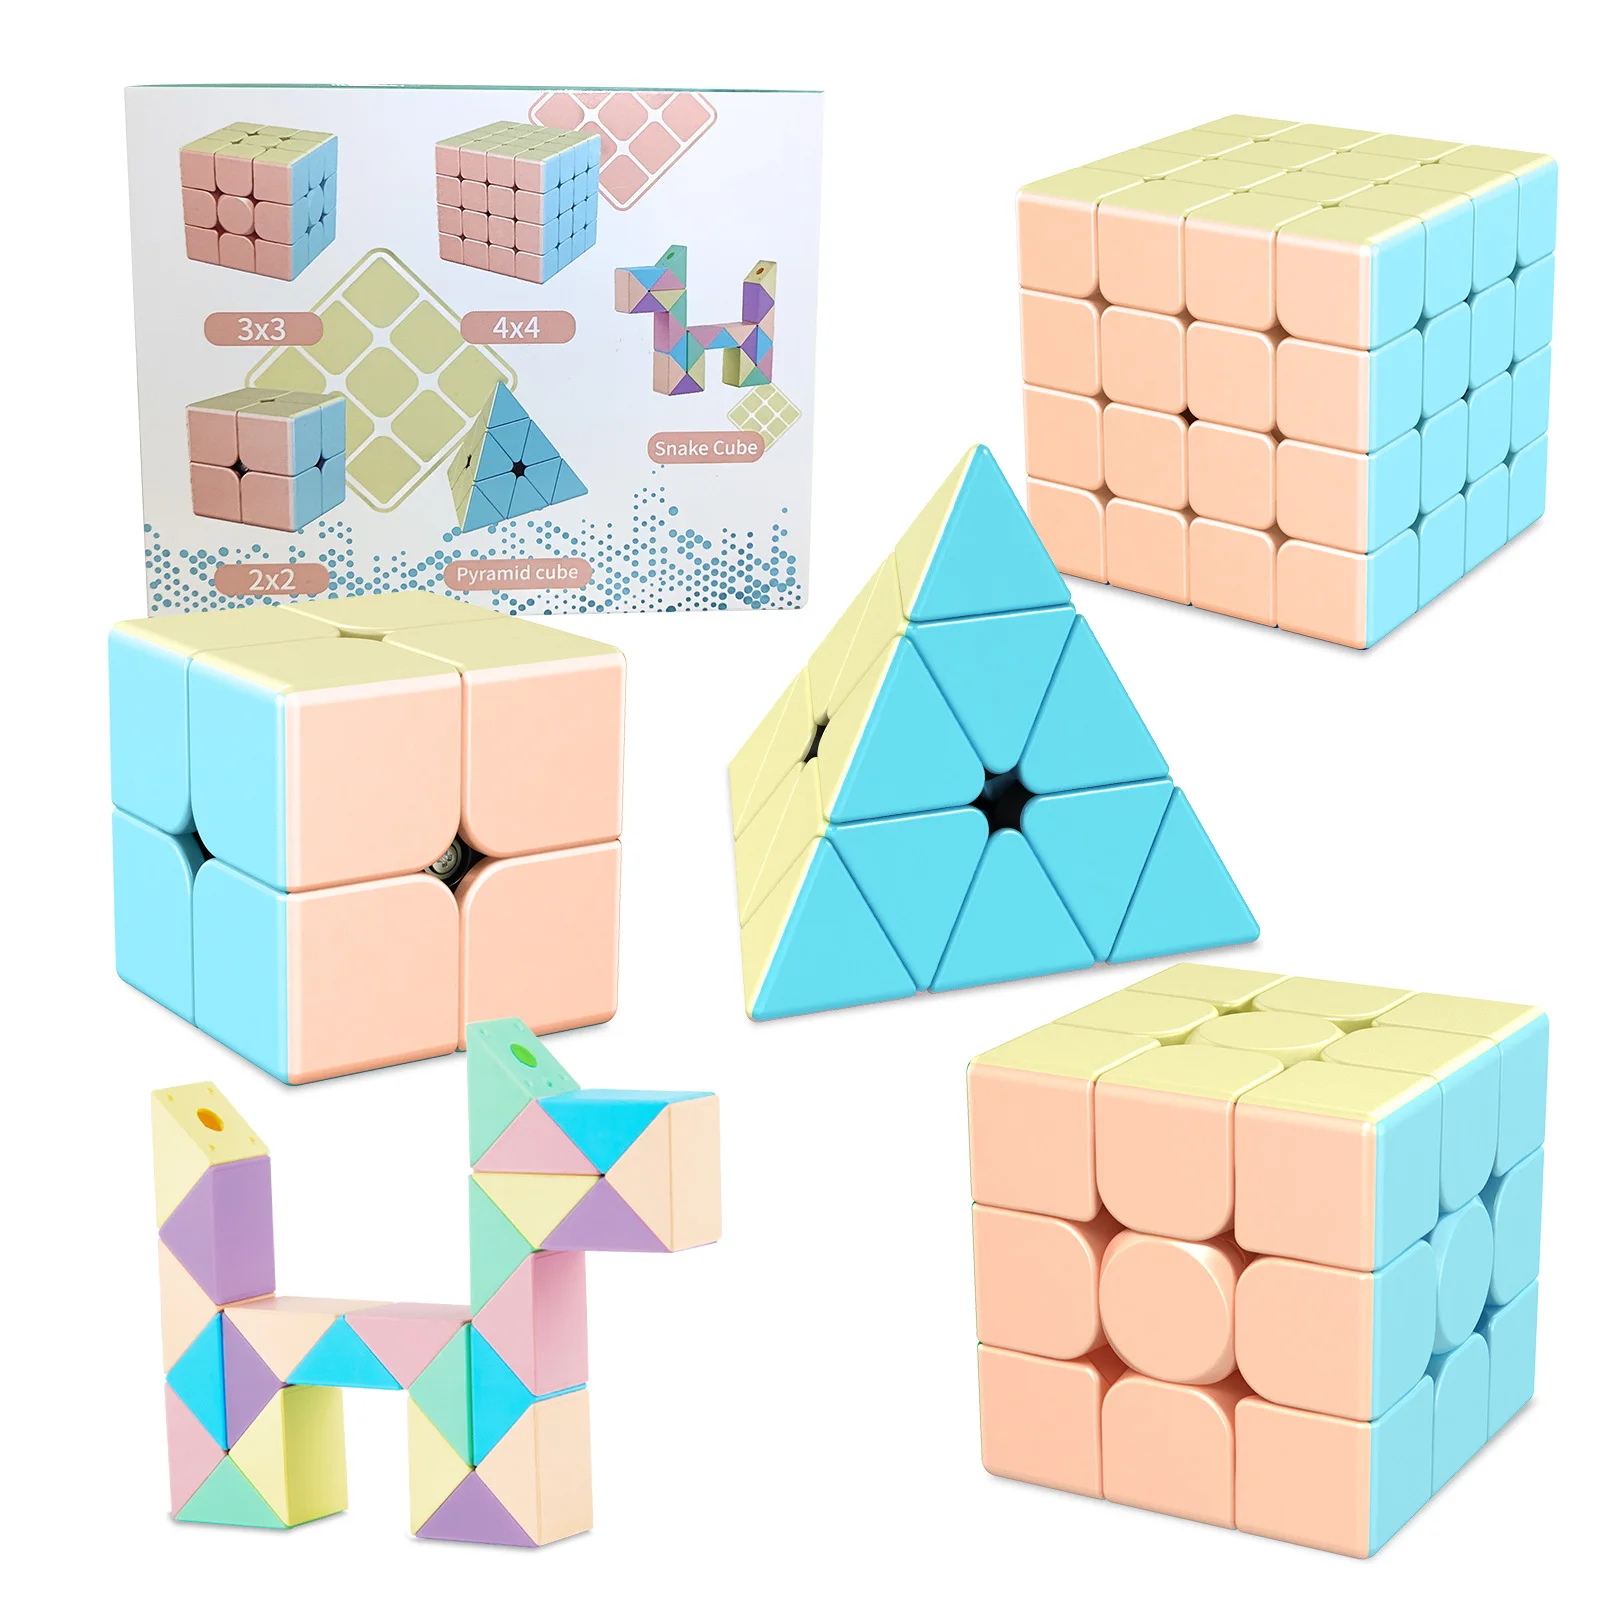 MOYU Meilong серии профессиональный магический куб 2x2 3x3 4x4 Пирамида скоростной пазл магический куб обучение куб магический игрушки